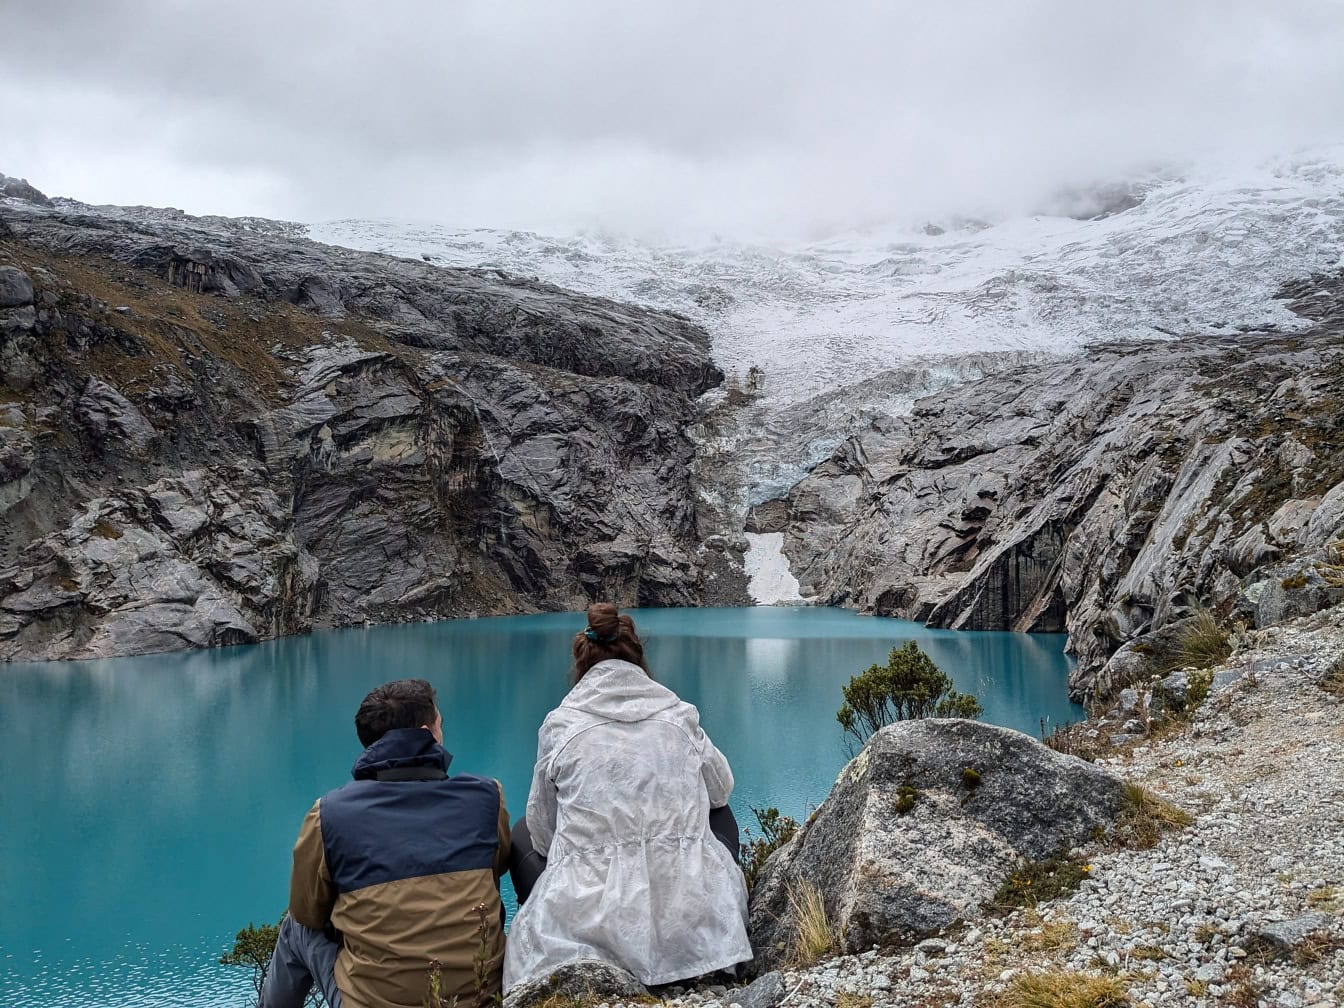 Homem e mulher sentados em uma margem do lago 513, um lago glaciar no sopé da montanha Nevado Hualcan no parque nacional Huascarán, Peru